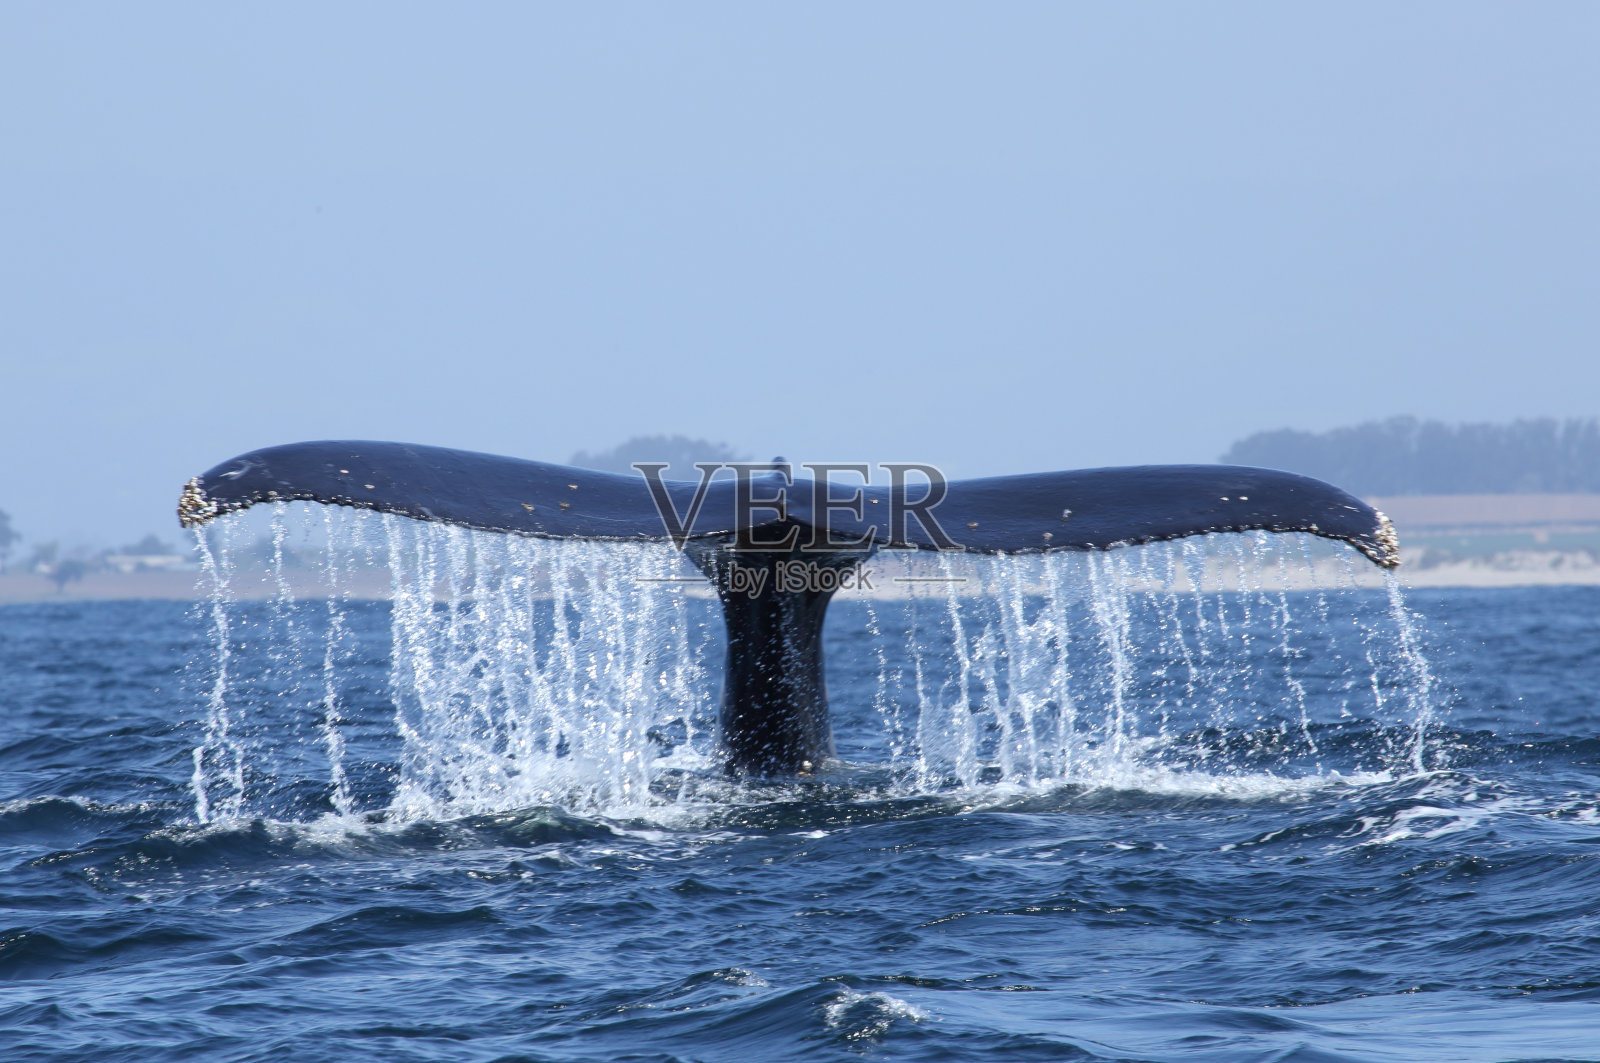 座头鲸在蒙特雷湾用尾巴潜水照片摄影图片